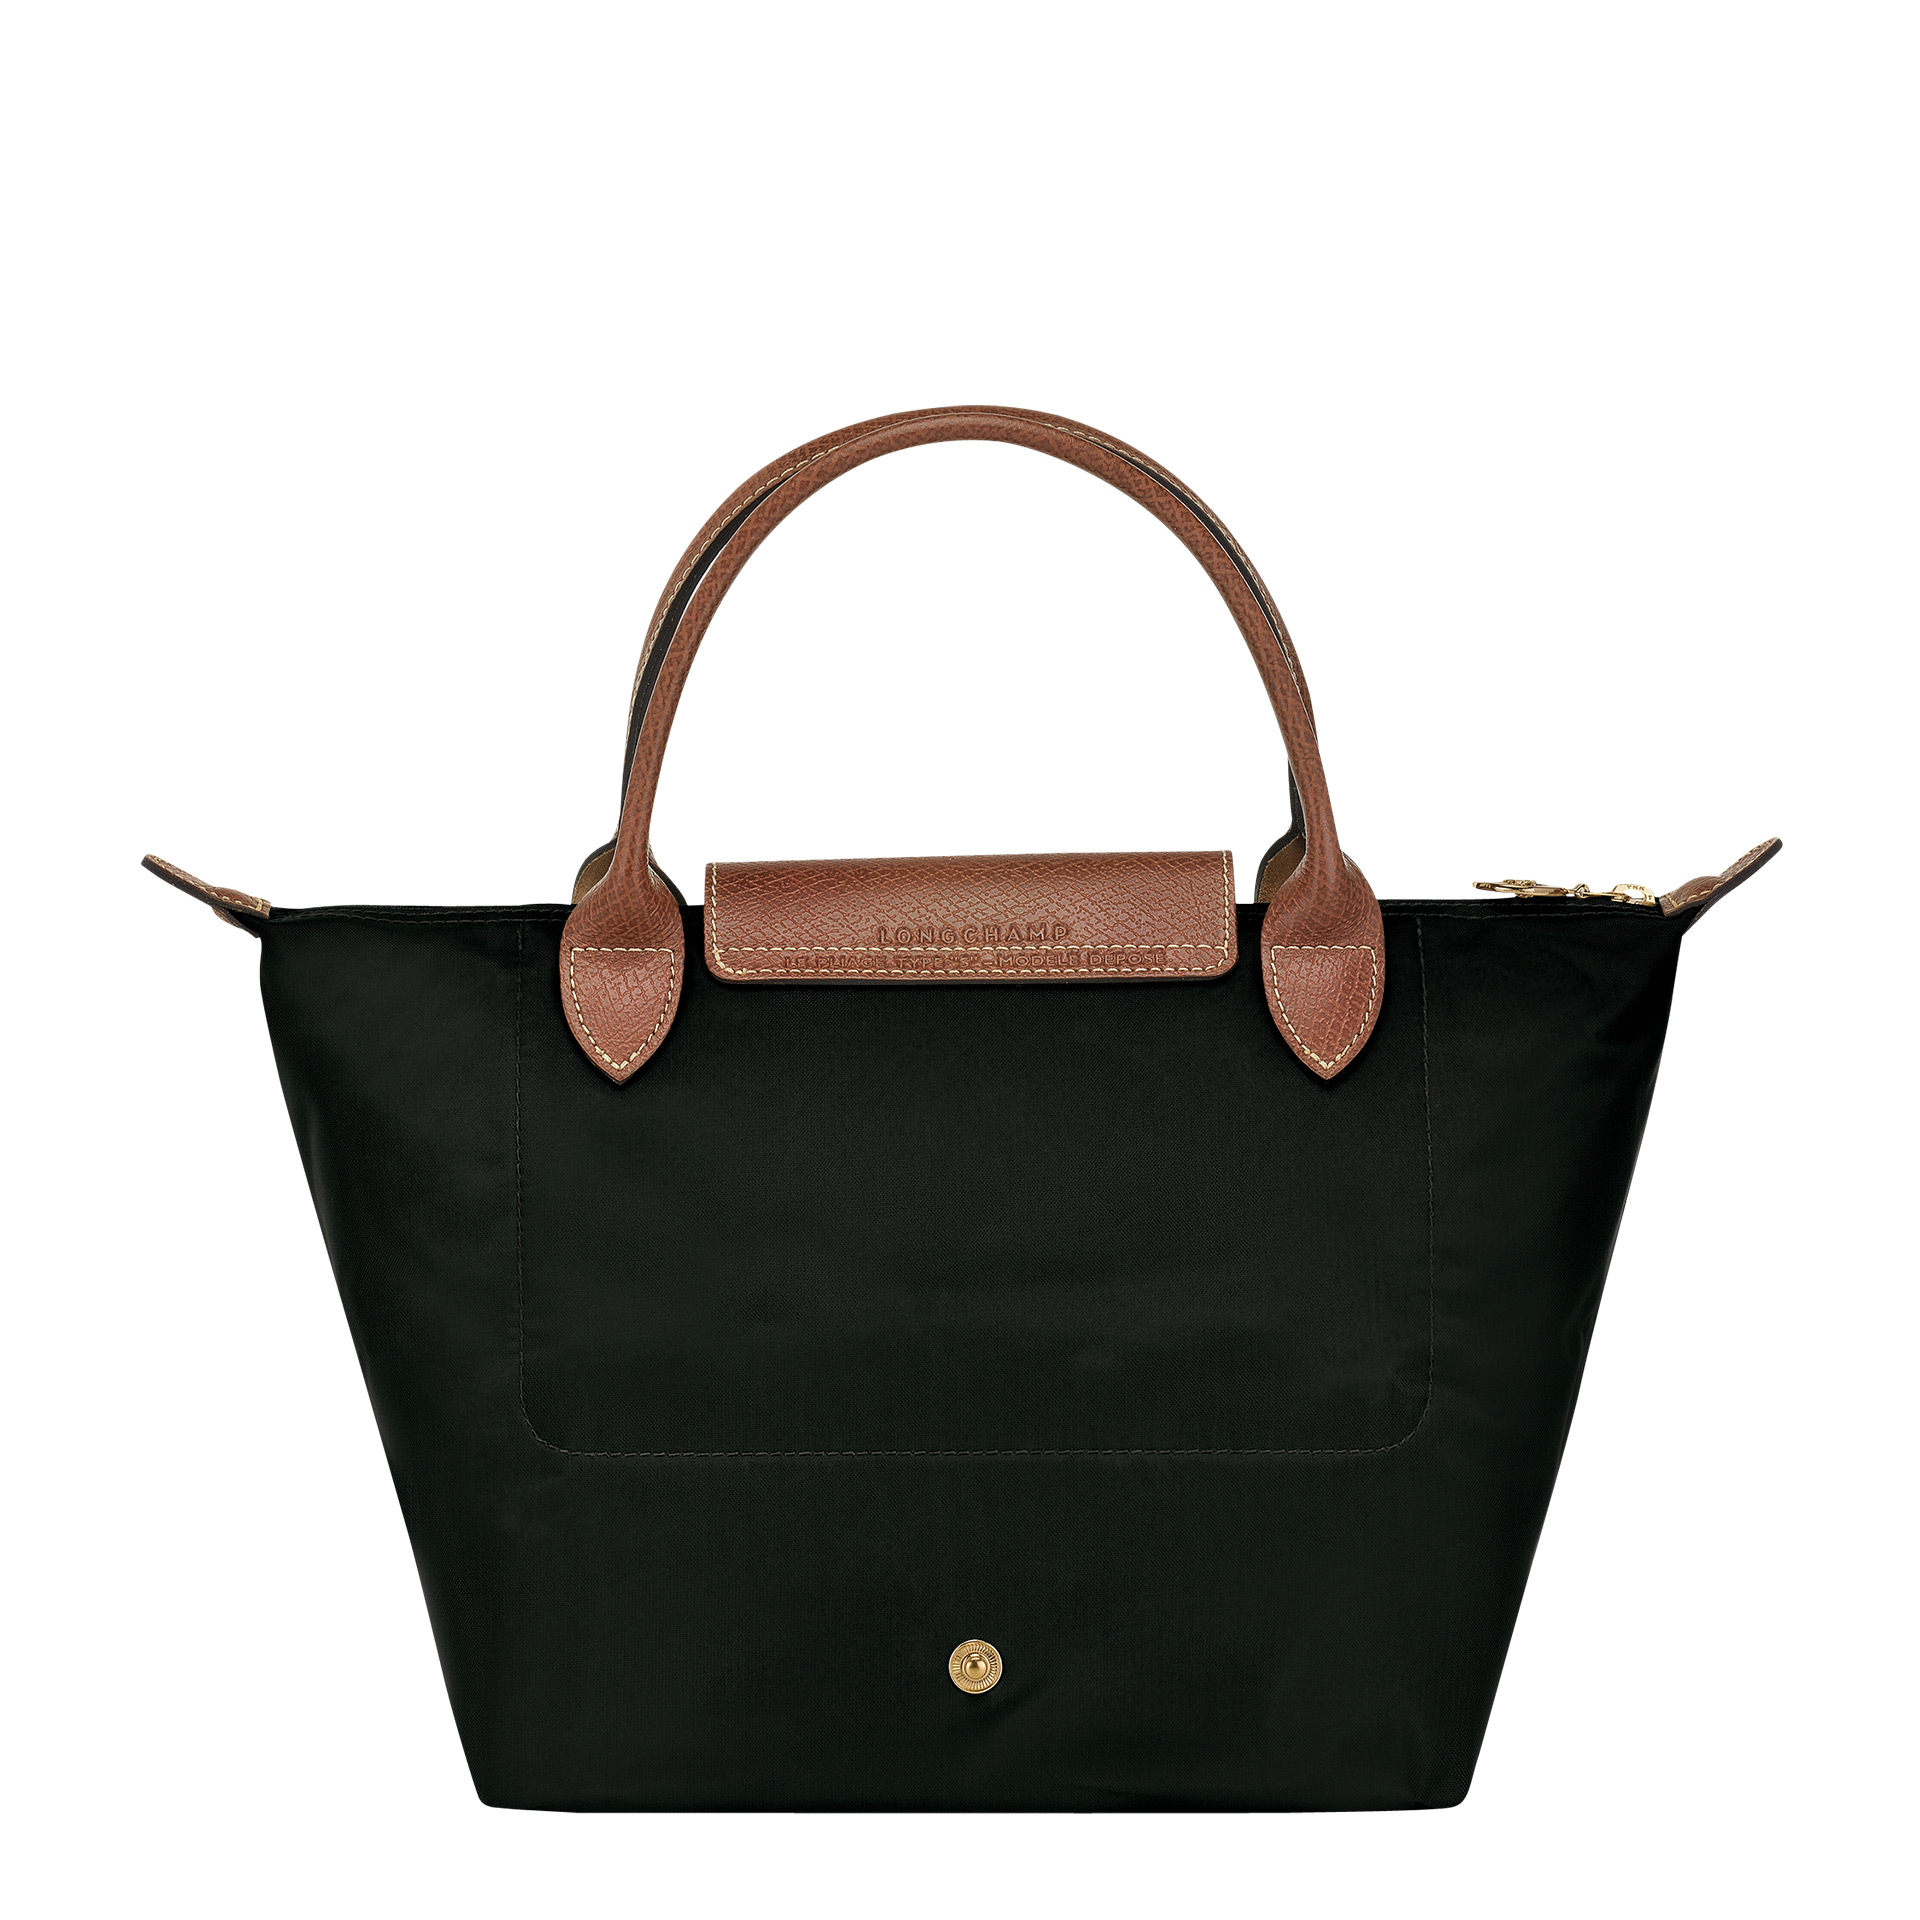 Longchamp Le Pliage Handtasche S black